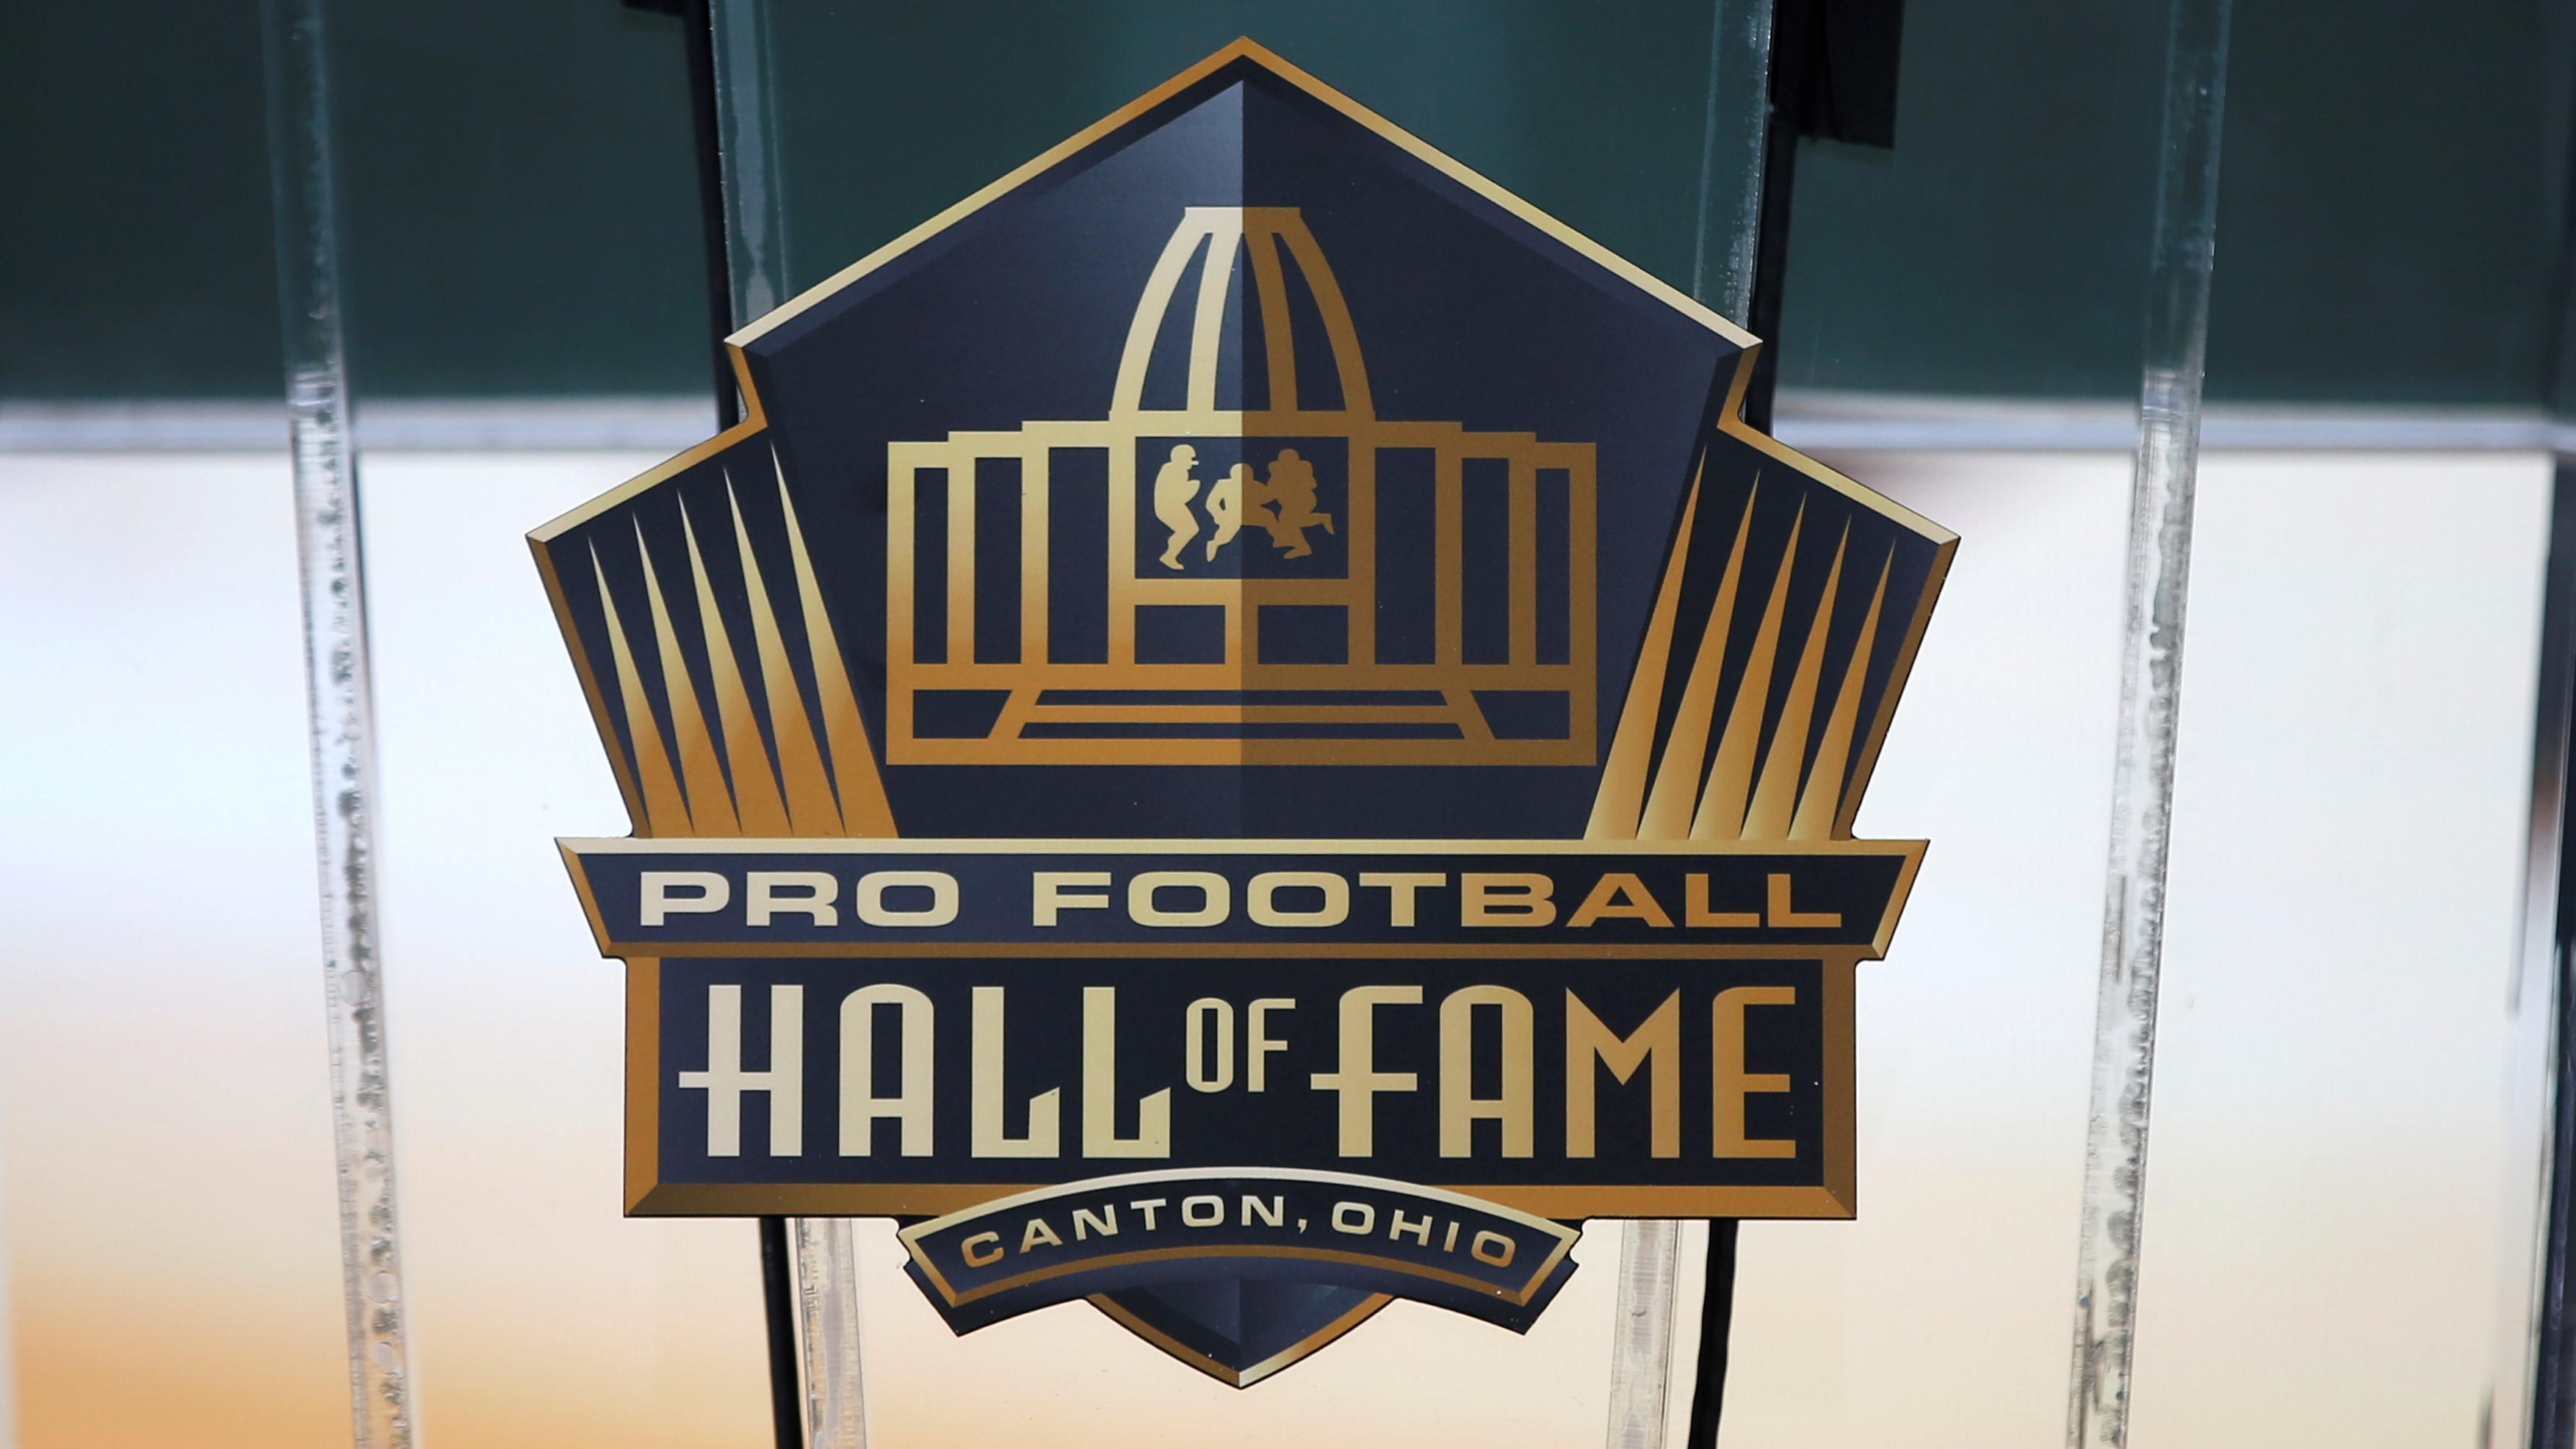 Chicago Bears: Devin Hester, Steve McMichael make Hall of Fame